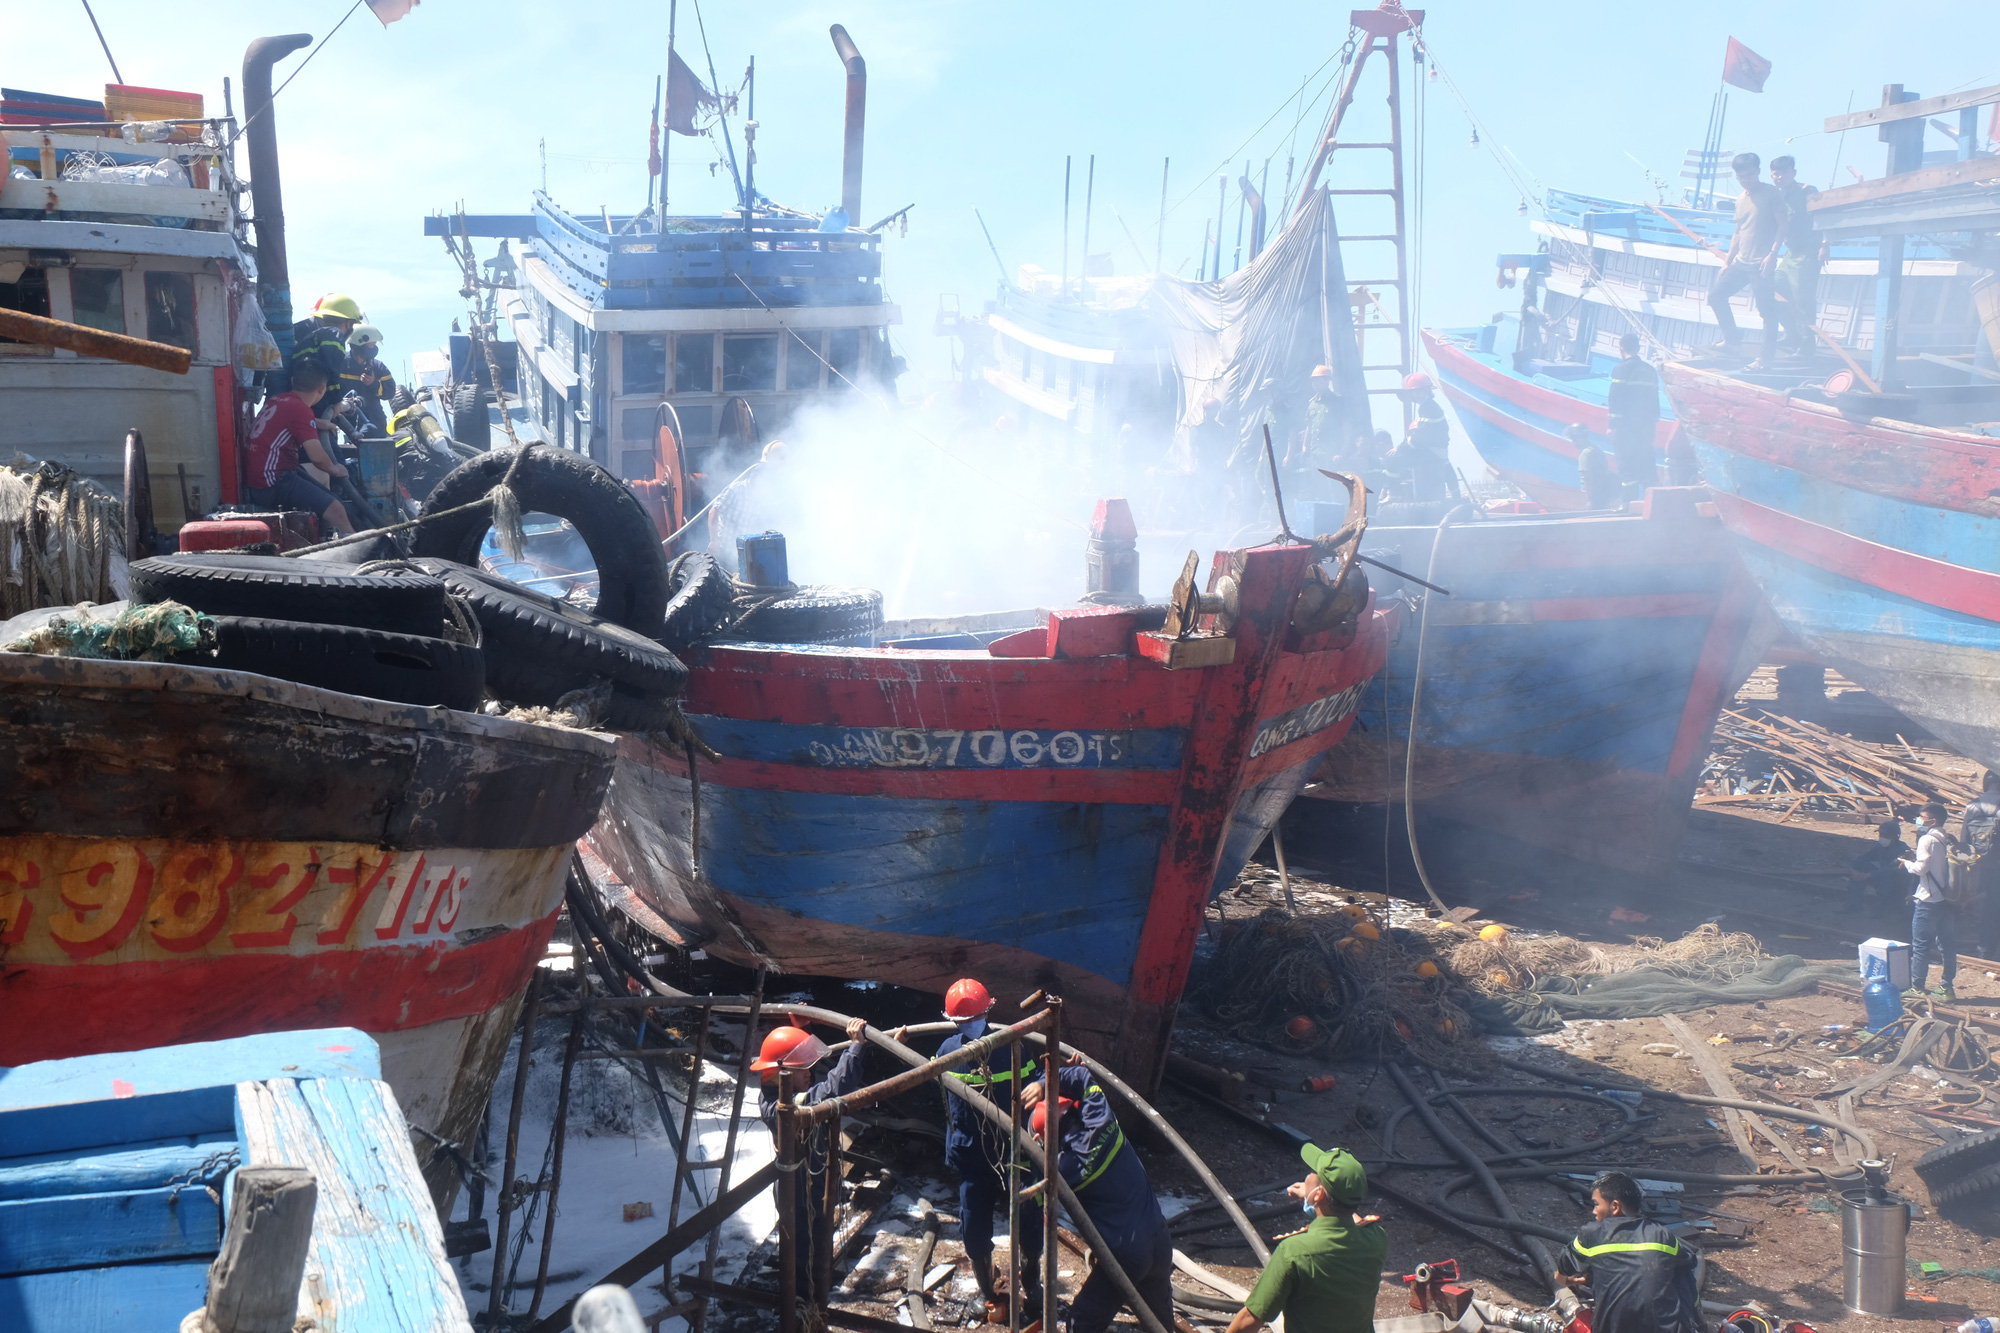 Tàu cá tiền tỷ bốc cháy ngùn ngụt giữa xưởng sửa chữa ở Đà Nẵng - Ảnh 3.